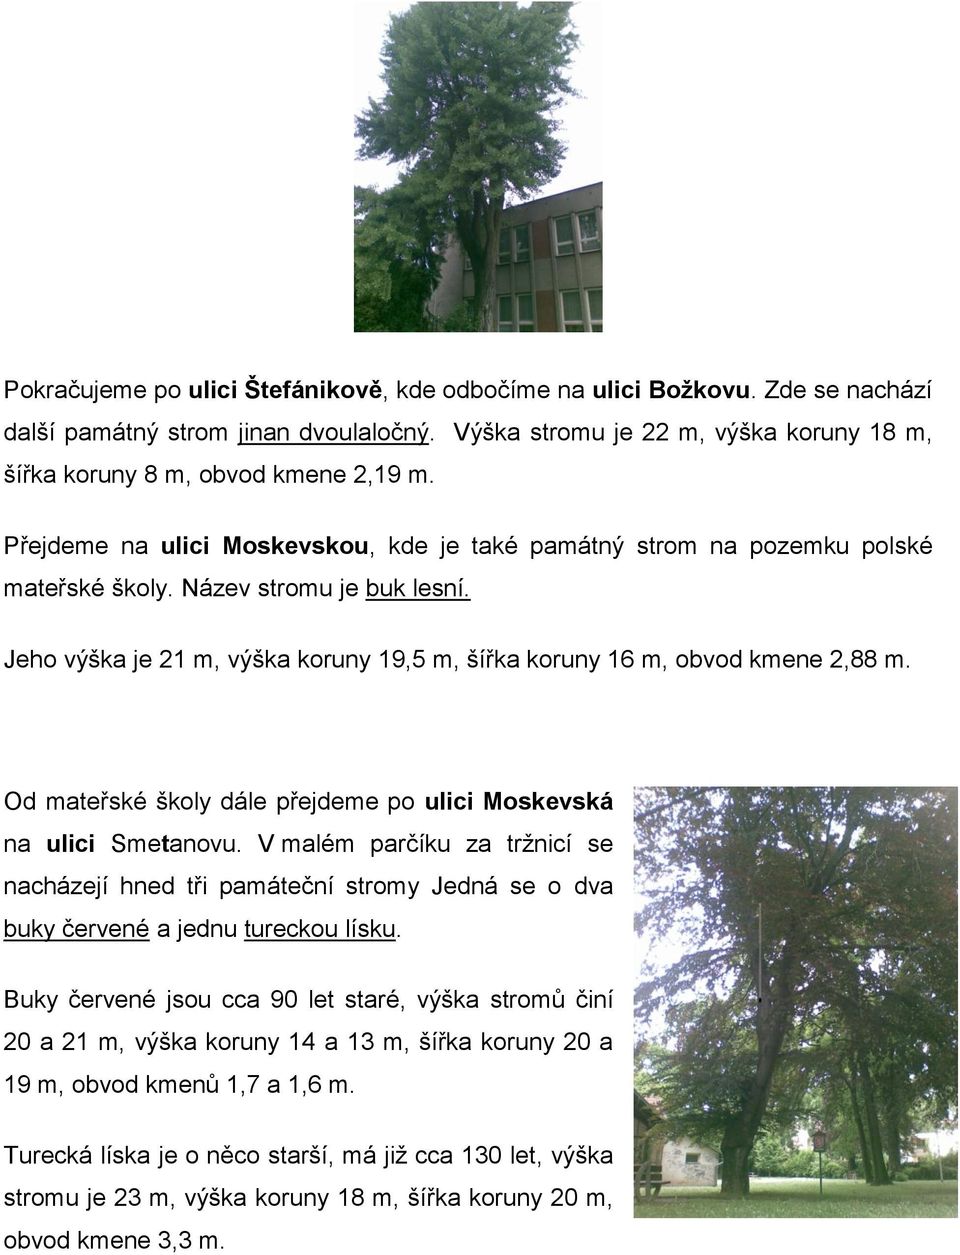 Od mateřské školy dále přejdeme po ulici Moskevská na ulici Smetanovu. V malém parčíku za trţnicí se nacházejí hned tři památeční stromy Jedná se o dva buky červené a jednu tureckou lísku.